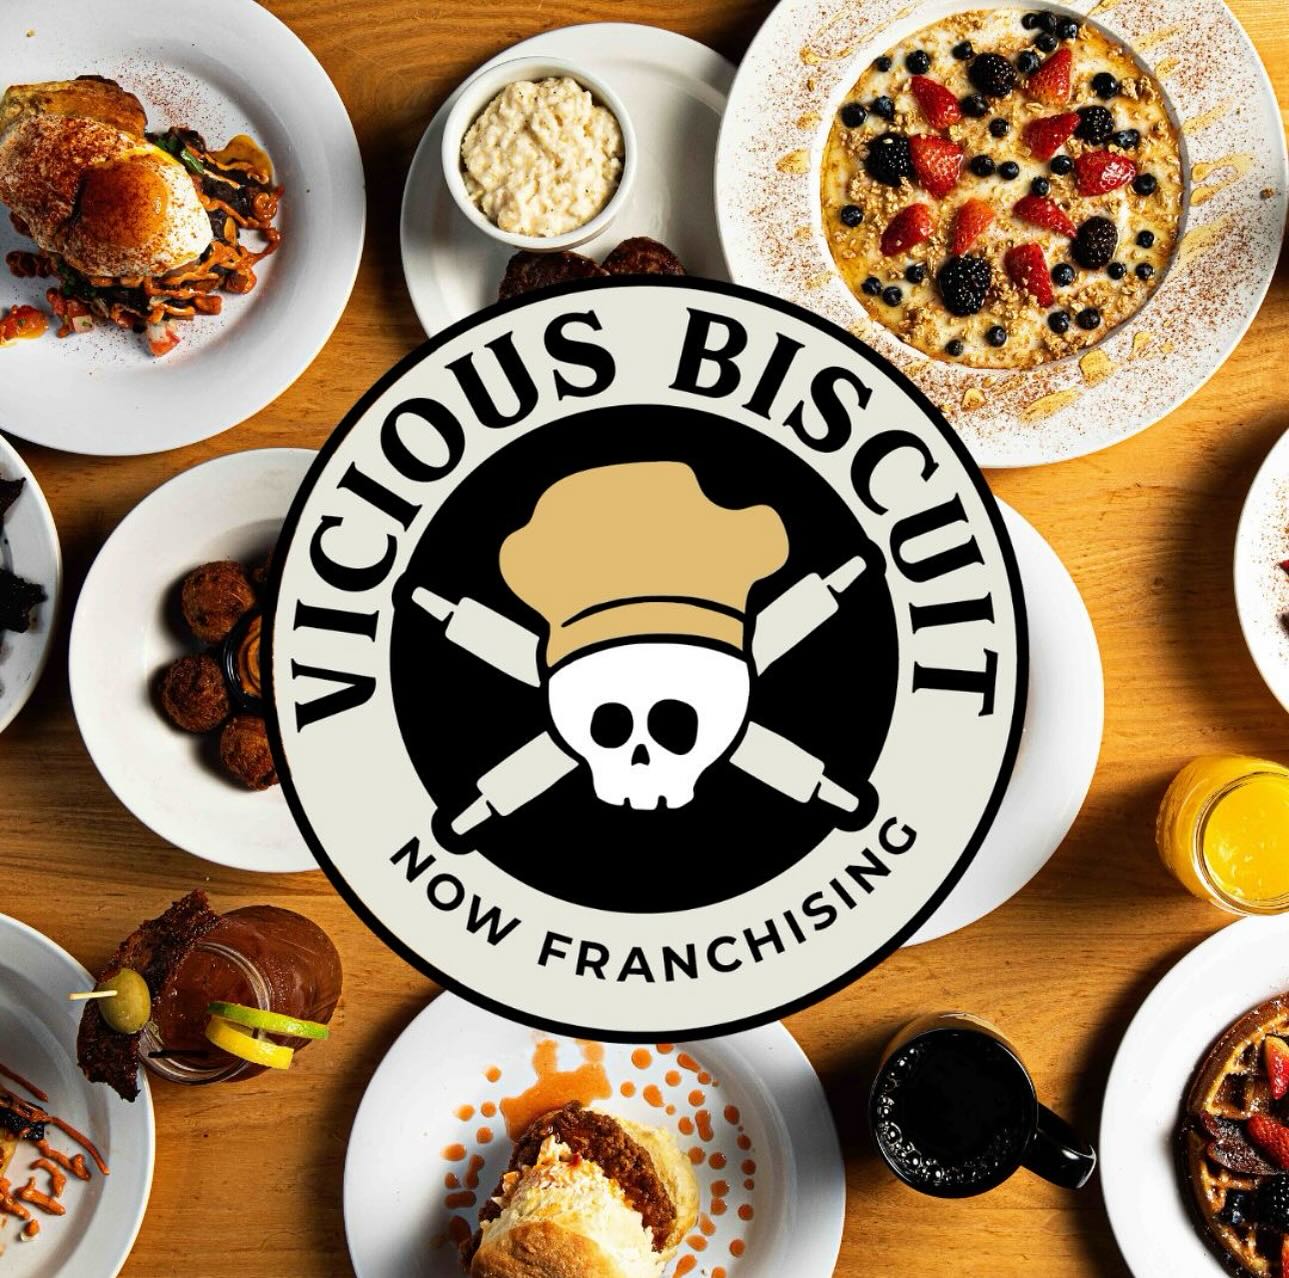 Vicious Biscuit - Restaurant in SC, NC, FL